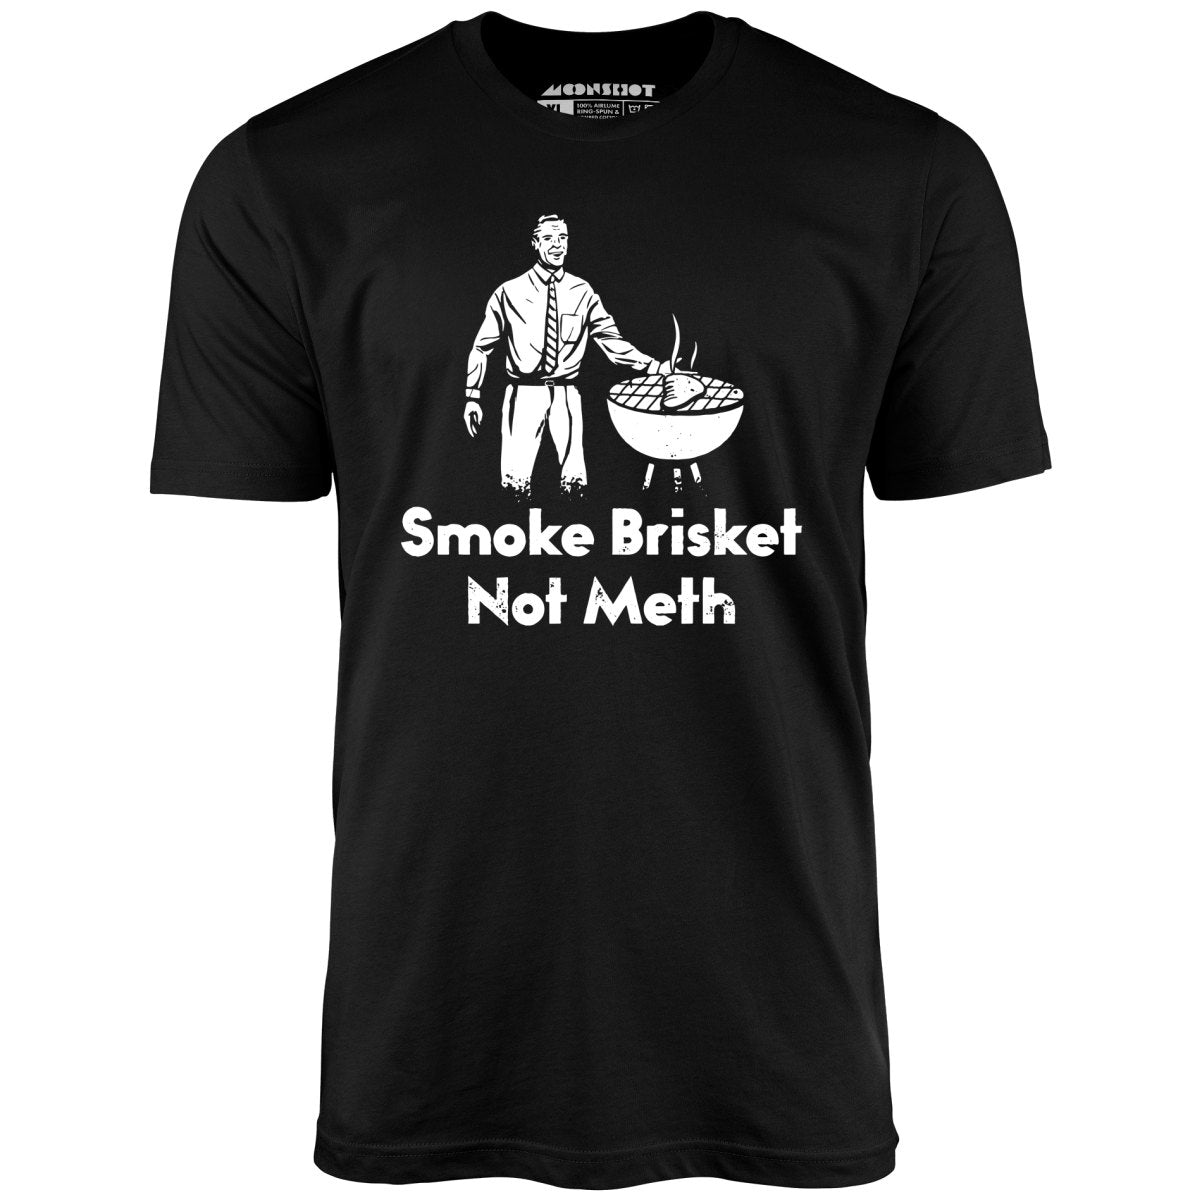 Smoke Brisket Not Meth v2 - Unisex T-Shirt